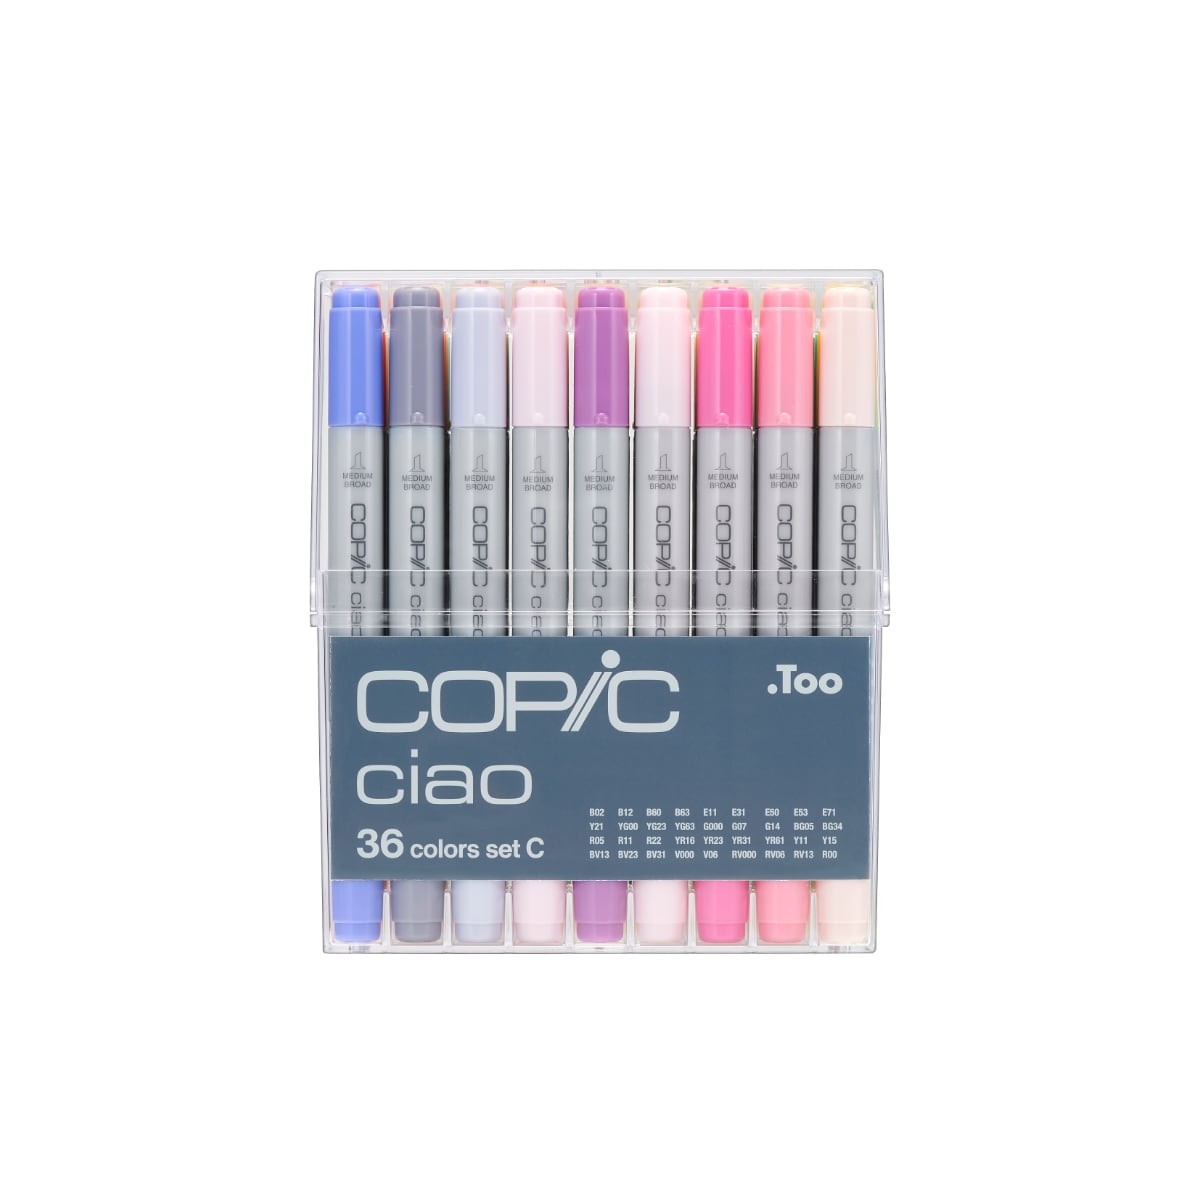 Copic Ciao 36 colors set C